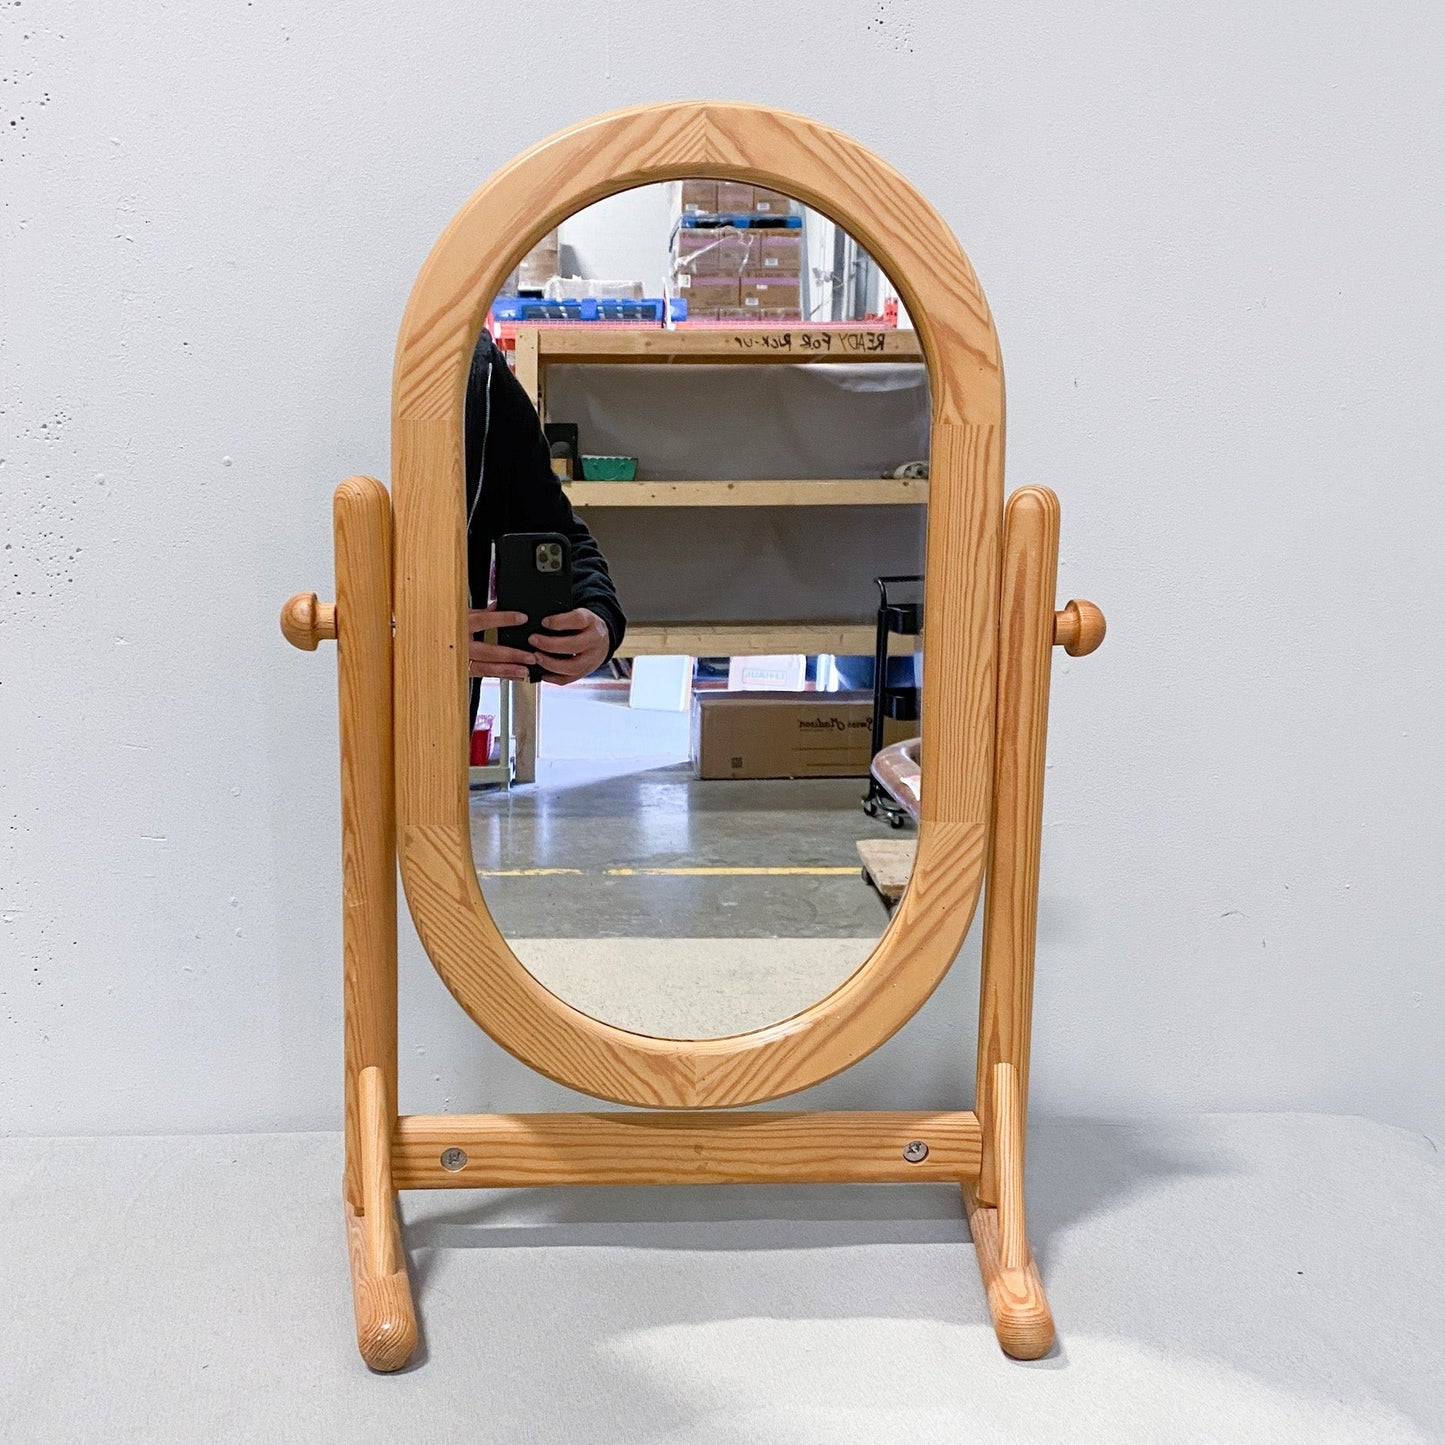 Wood Tabletop Vanity Mirror